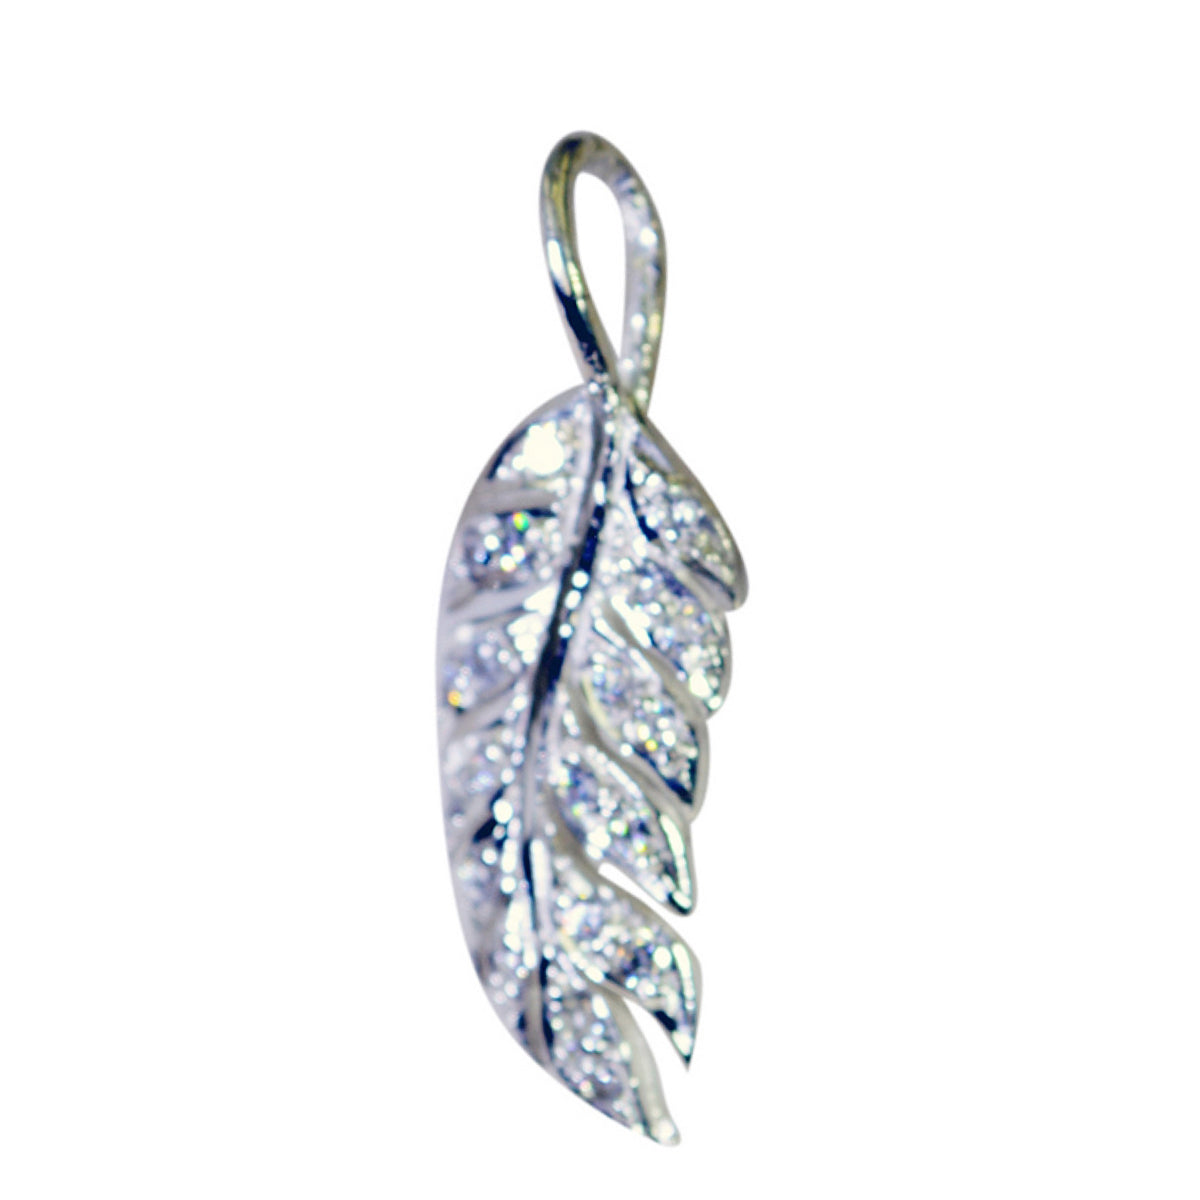 Riyo natuurlijke edelsteen rond gefacetteerd wit wit cz 1136 sterling zilveren hanger cadeau voor vriendin